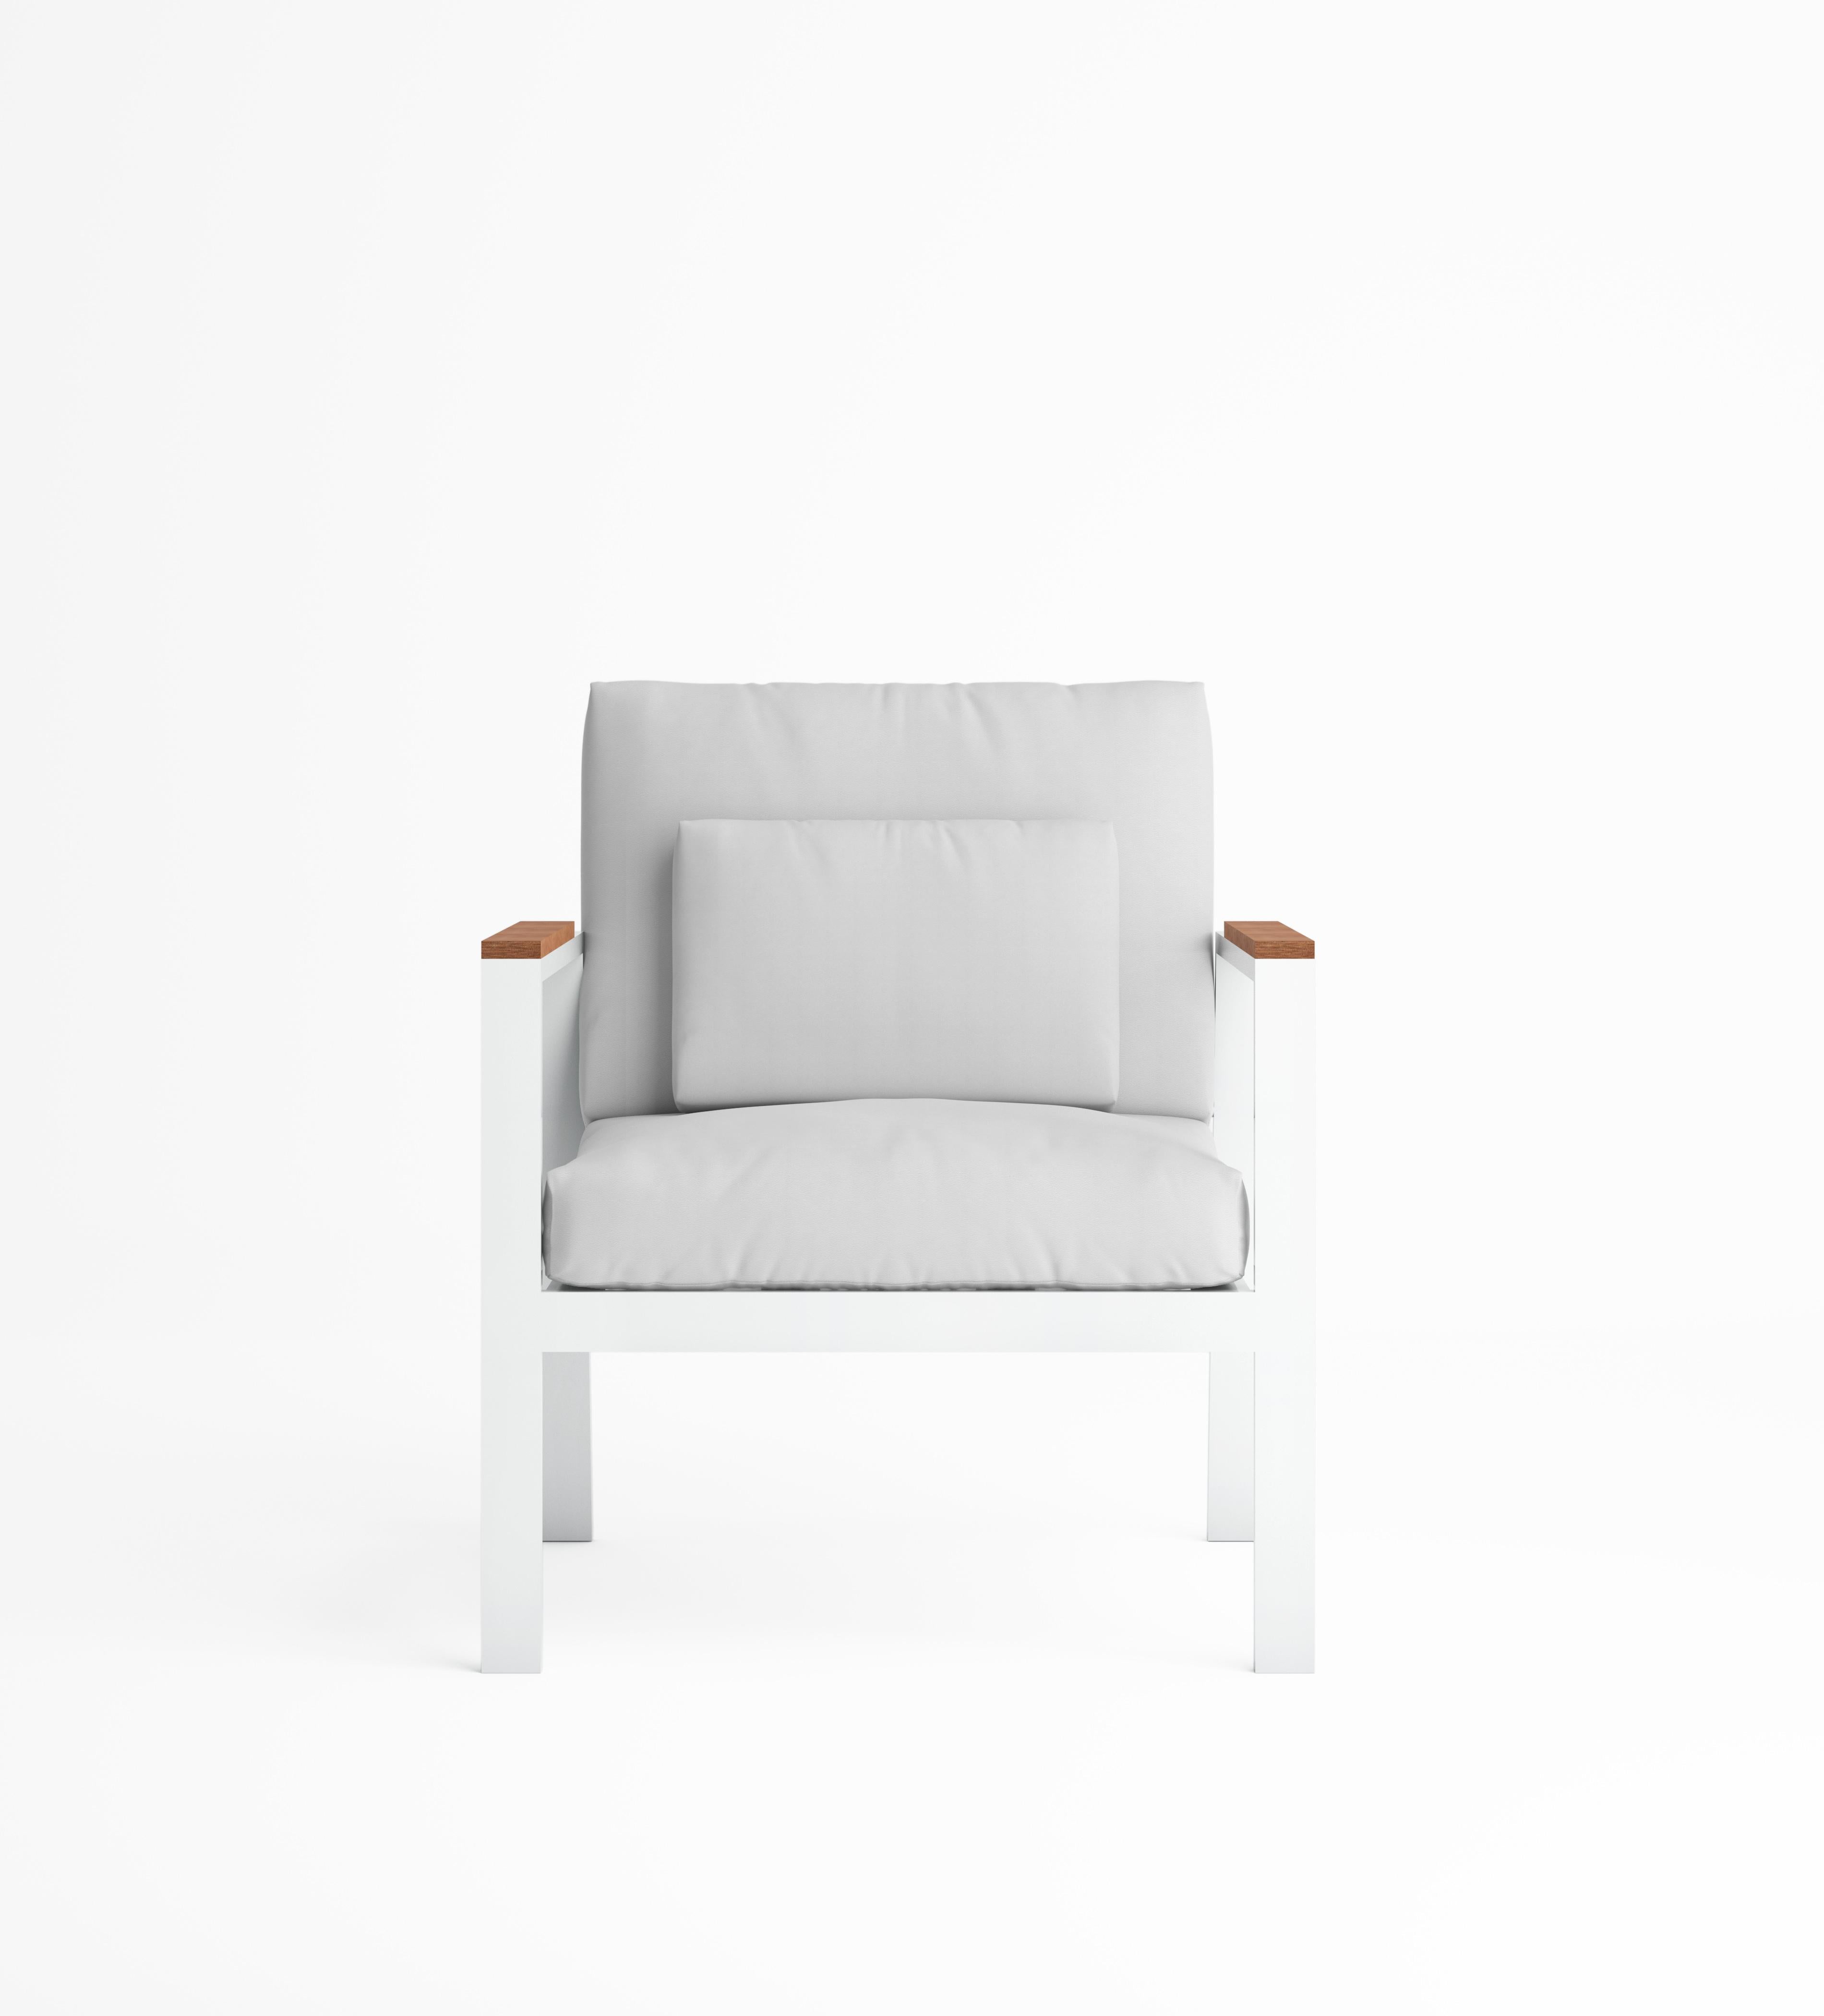 Timeless est la collection de meubles d'extérieur inspirée par le langage architectural rationnel du début du 20e siècle, conçu par José A. Gandía-Blasco Canales et Borja García. Son design aux formes discrètes mais de caractère communique